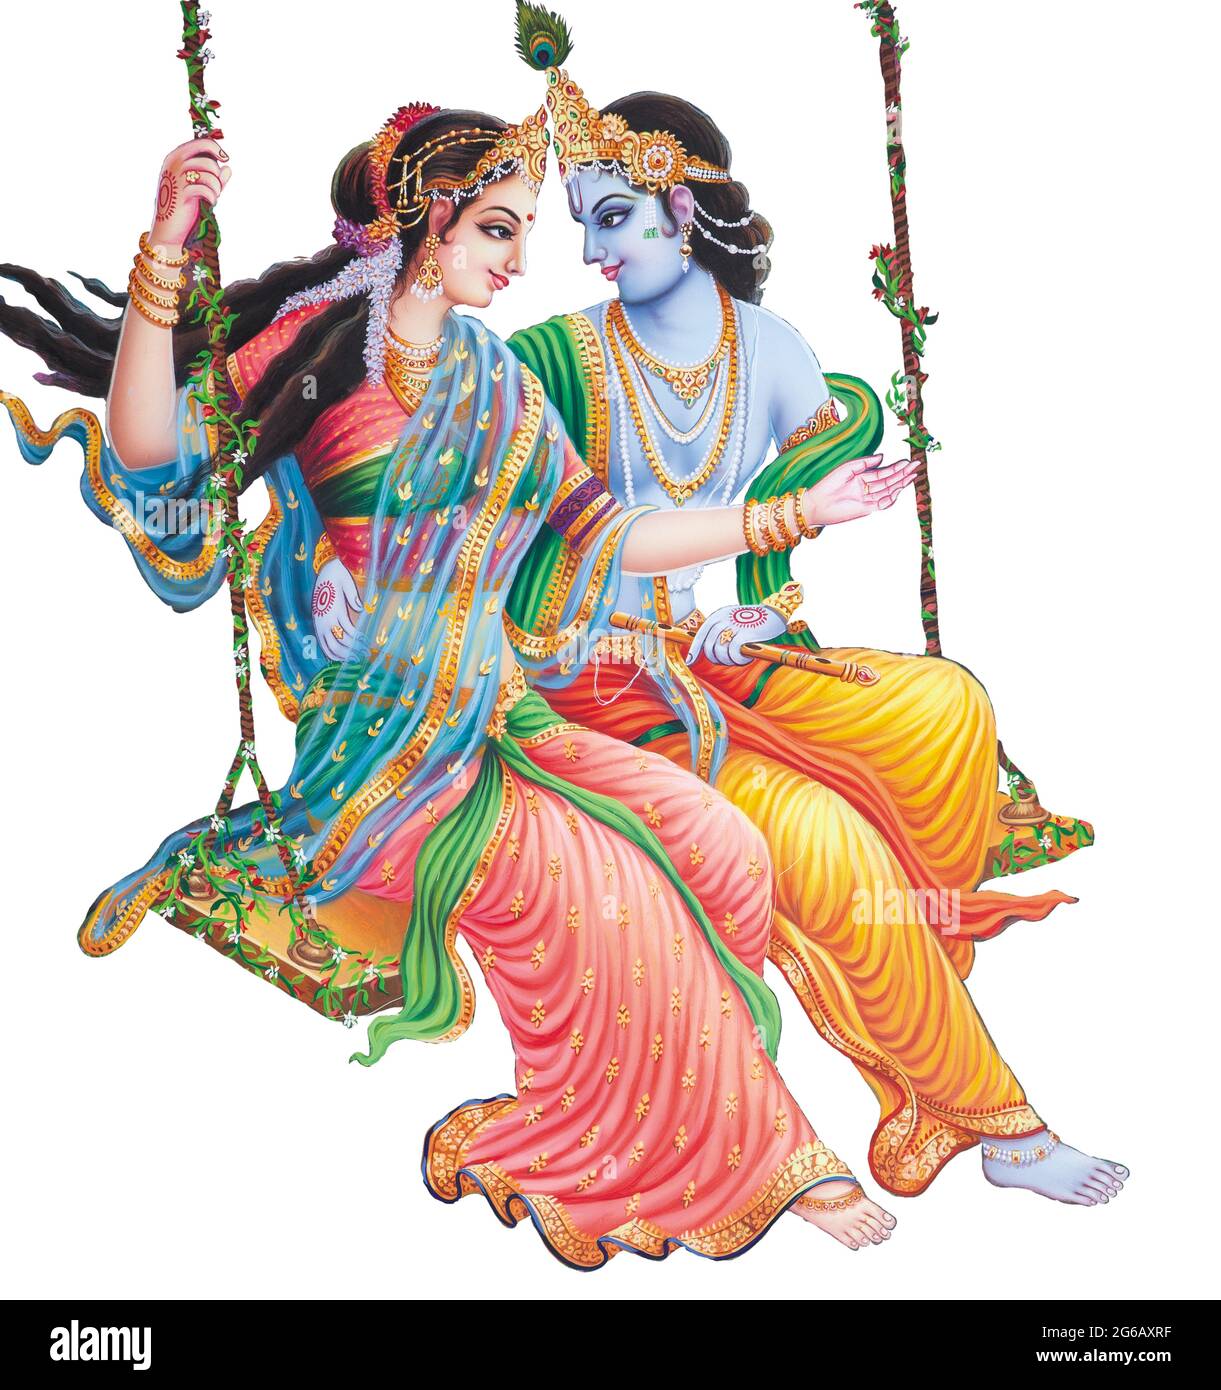 God Radhakrishna Indian Lord Krishna Indian Mythological Image Of